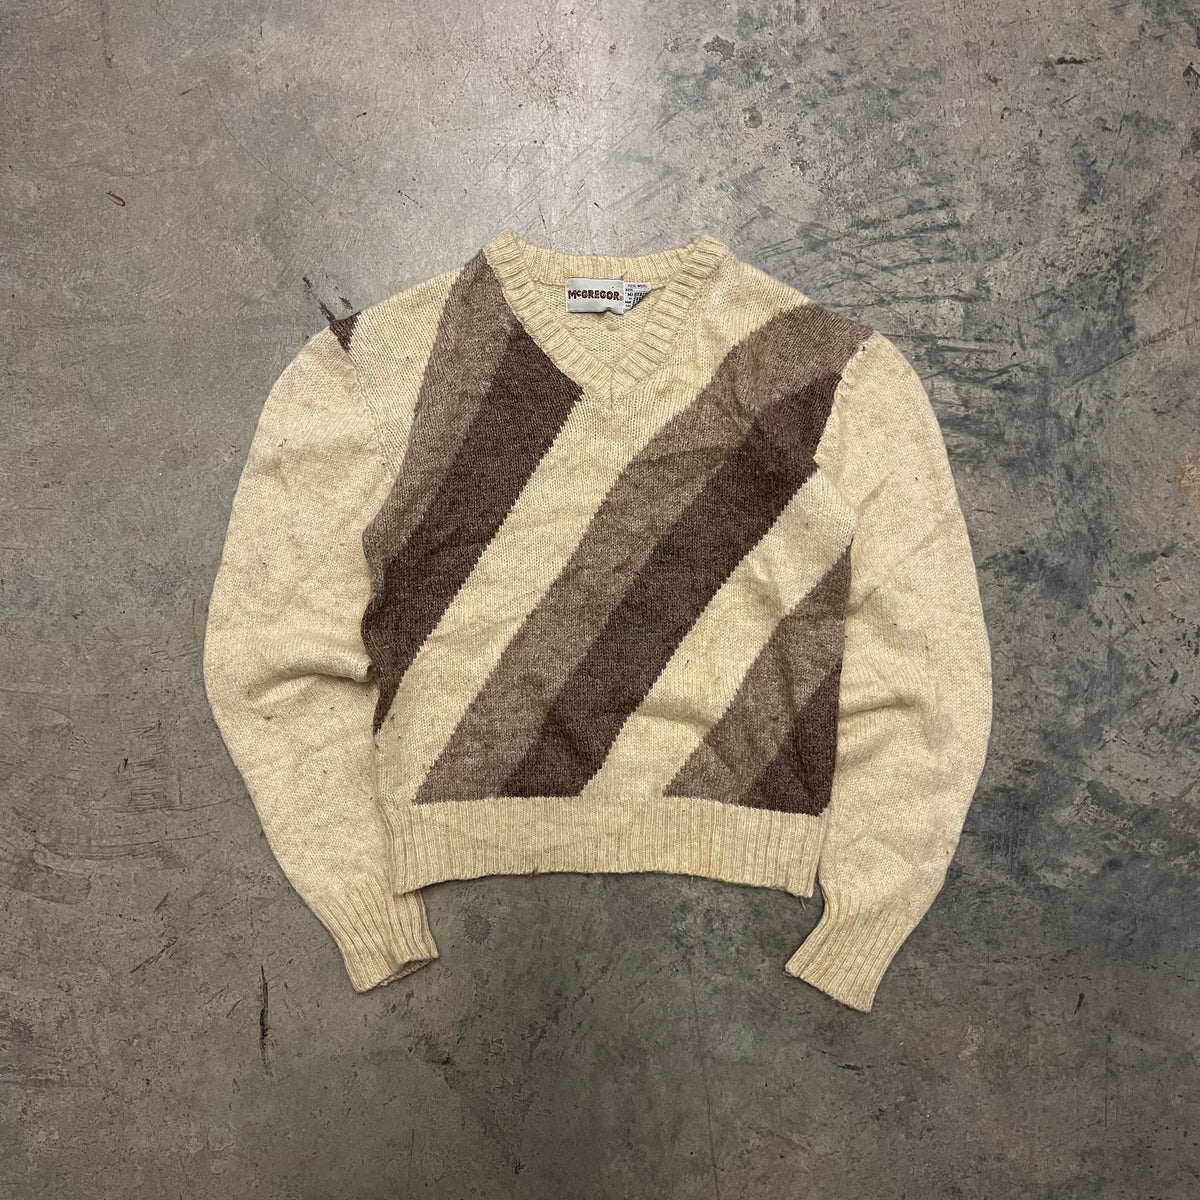 トップス1970s McGREGOR landscape knitted sweater - トップス